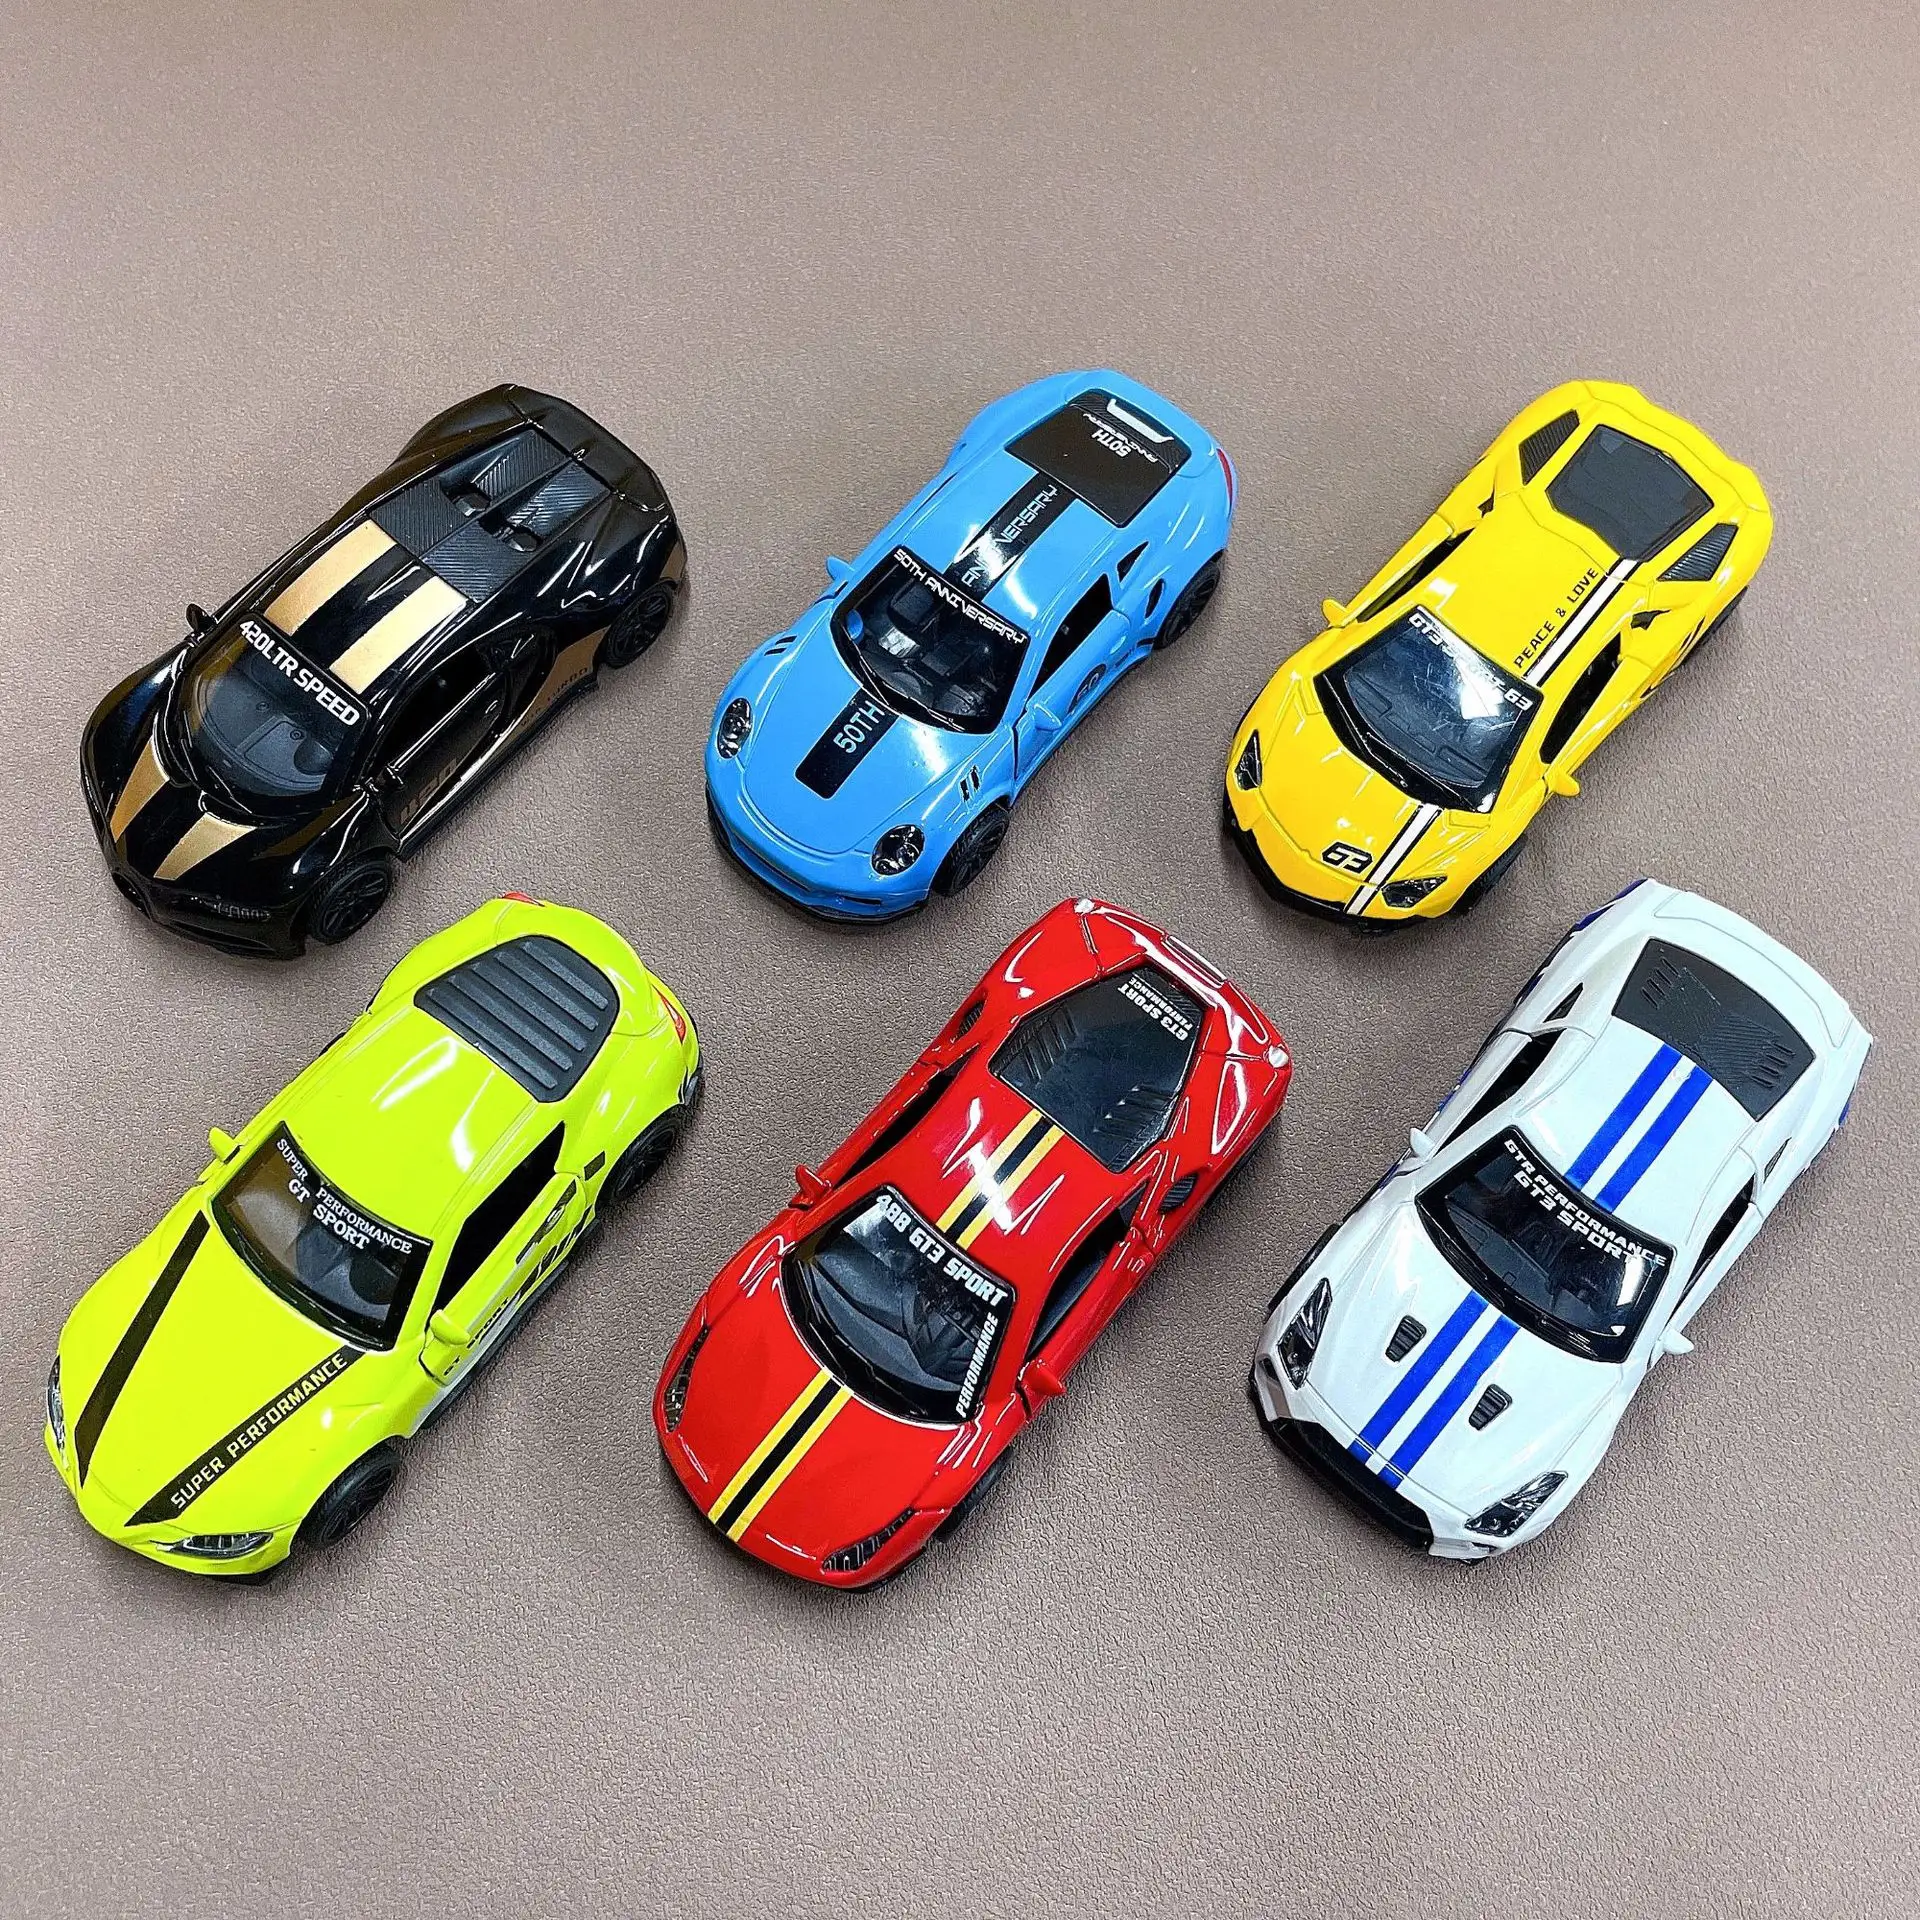 Alaşım retro acousto-optik üç kapı spor araba 1:43 altı renk hibrid alaşım benzetilmiş retro spor diecast araç modelleri